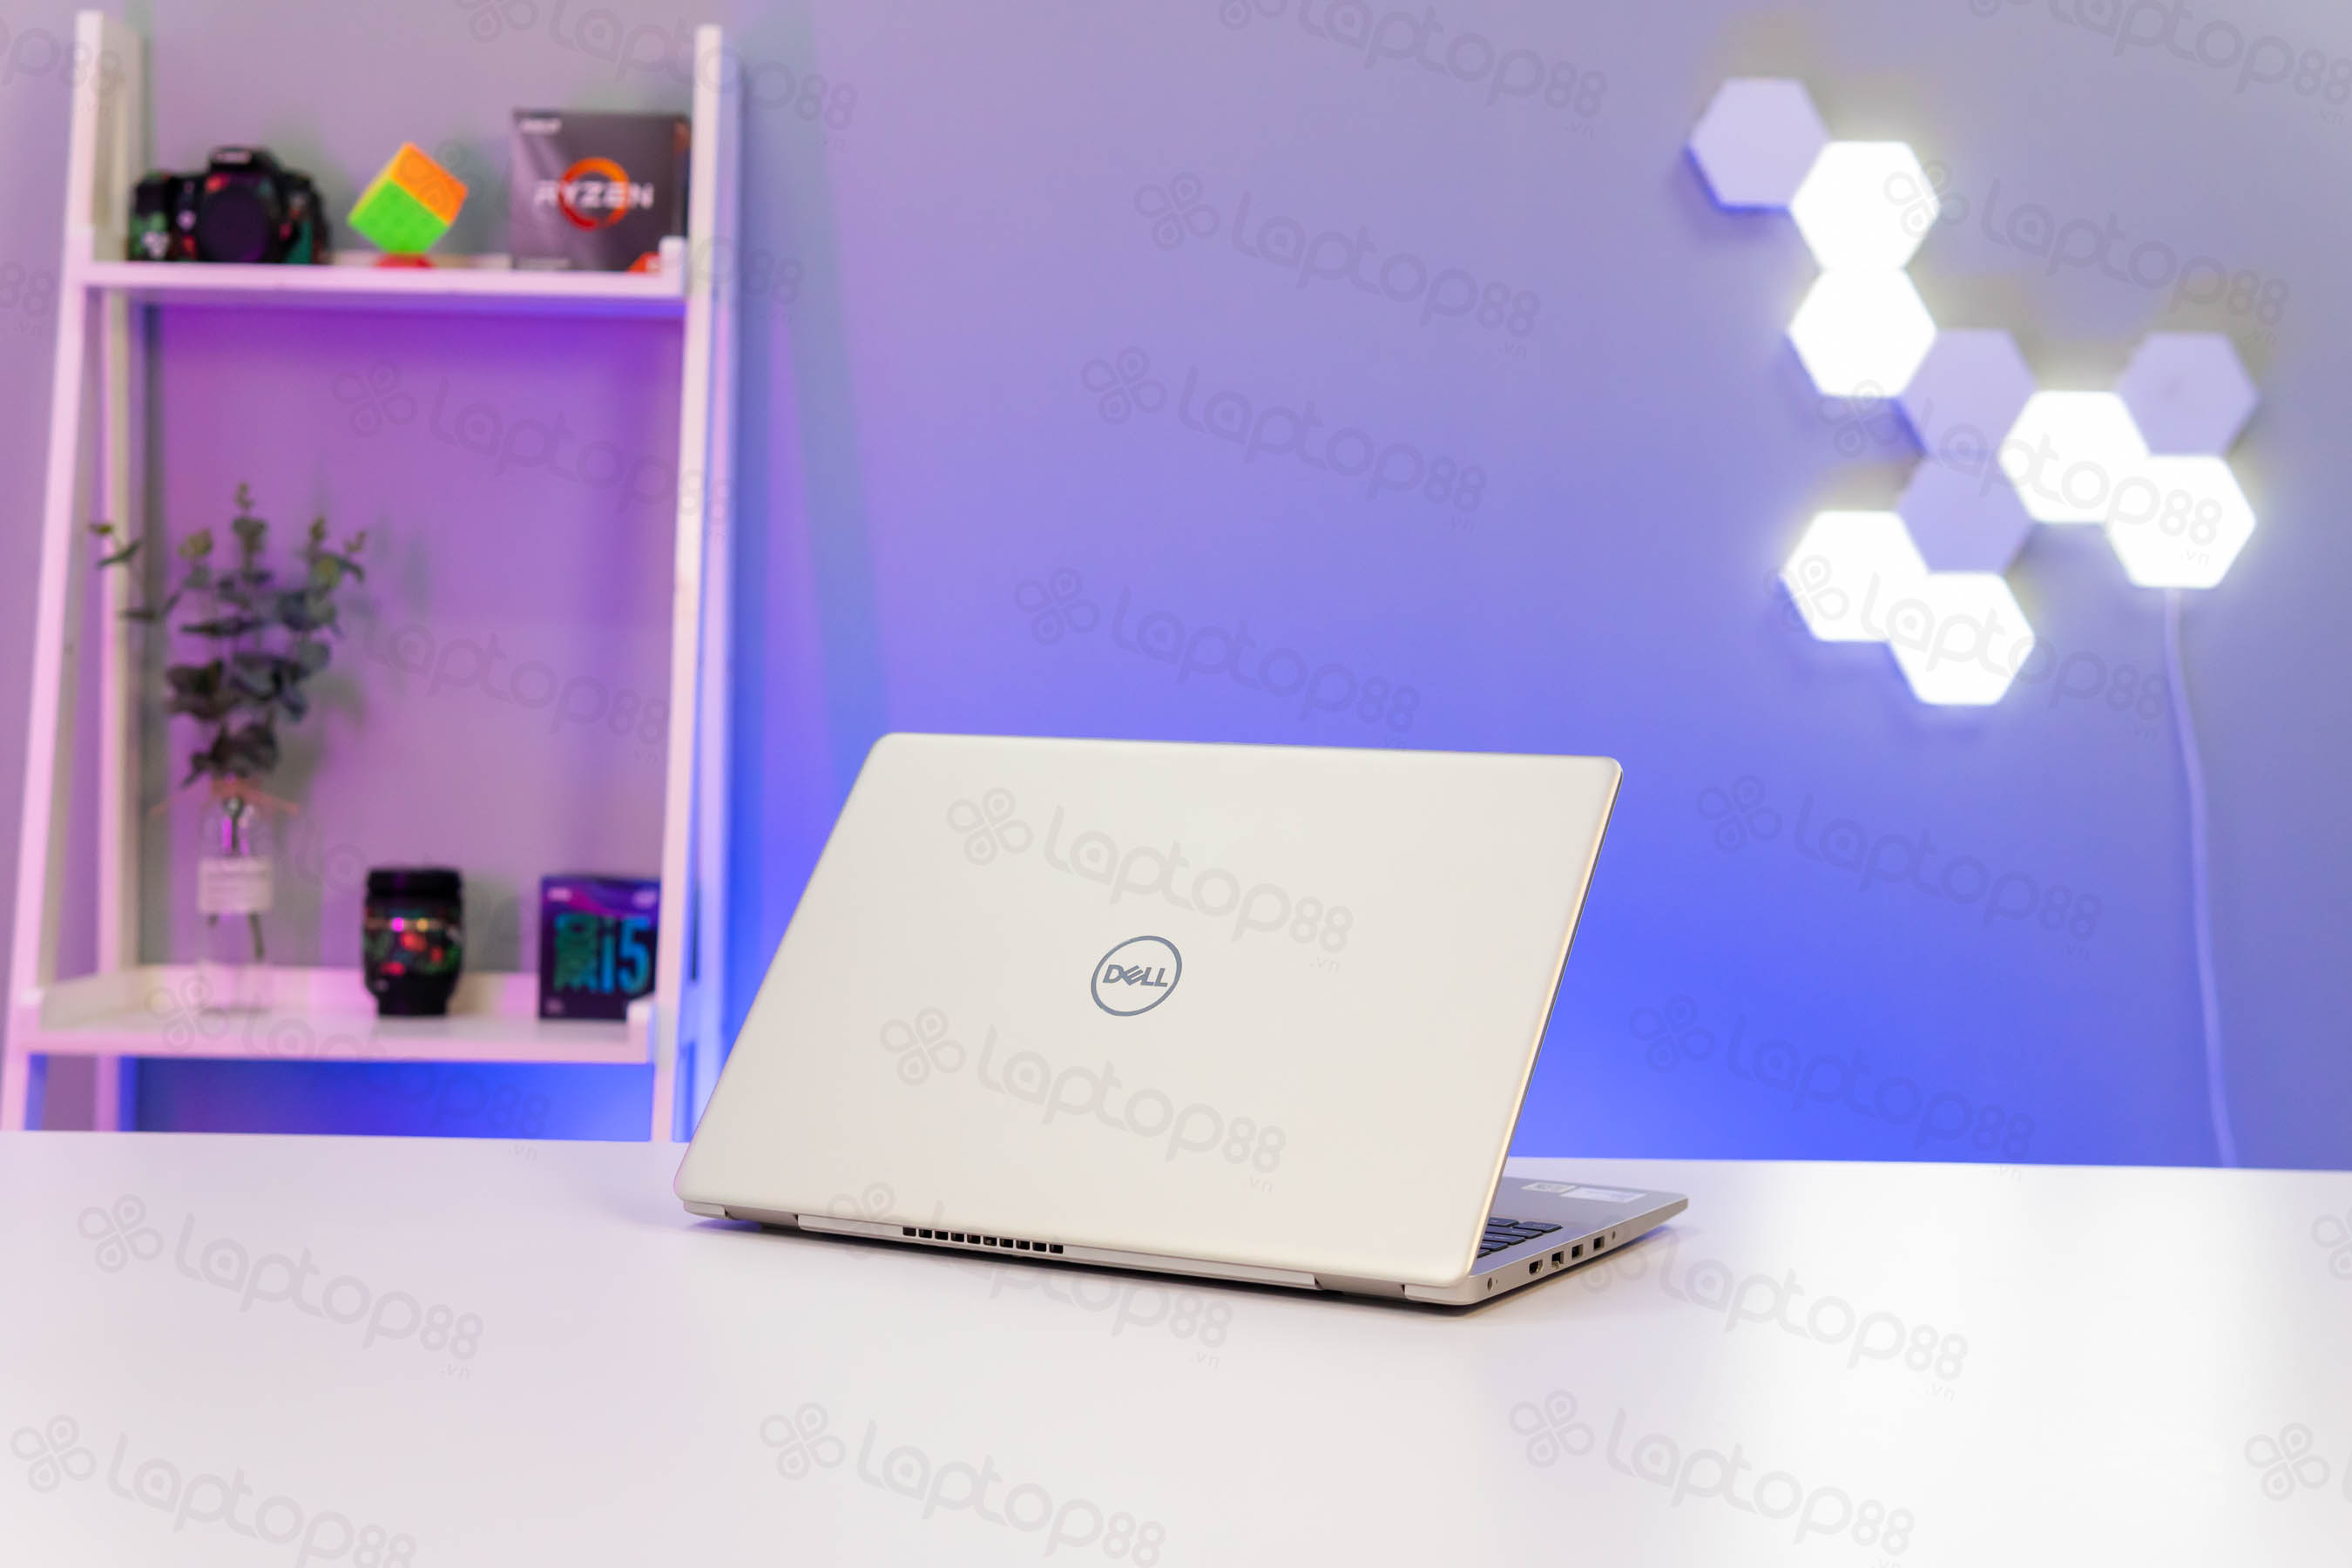 Giá laptop Dell core i5 hiện nay là bao nhiêu, tham khảo ngay!